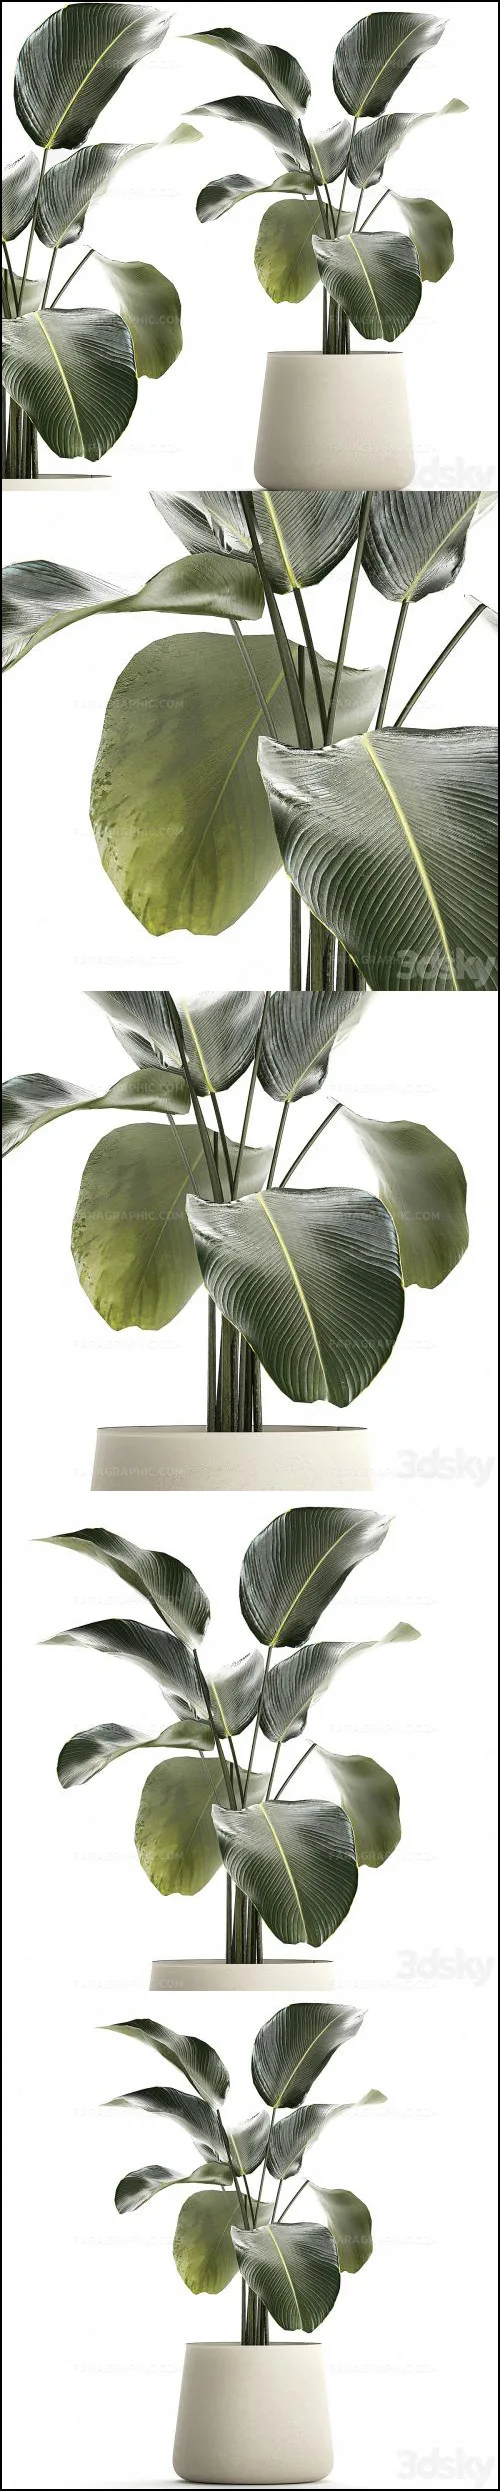 دانلود مدل سه بعدی گیاه و گلدان - شماره 9